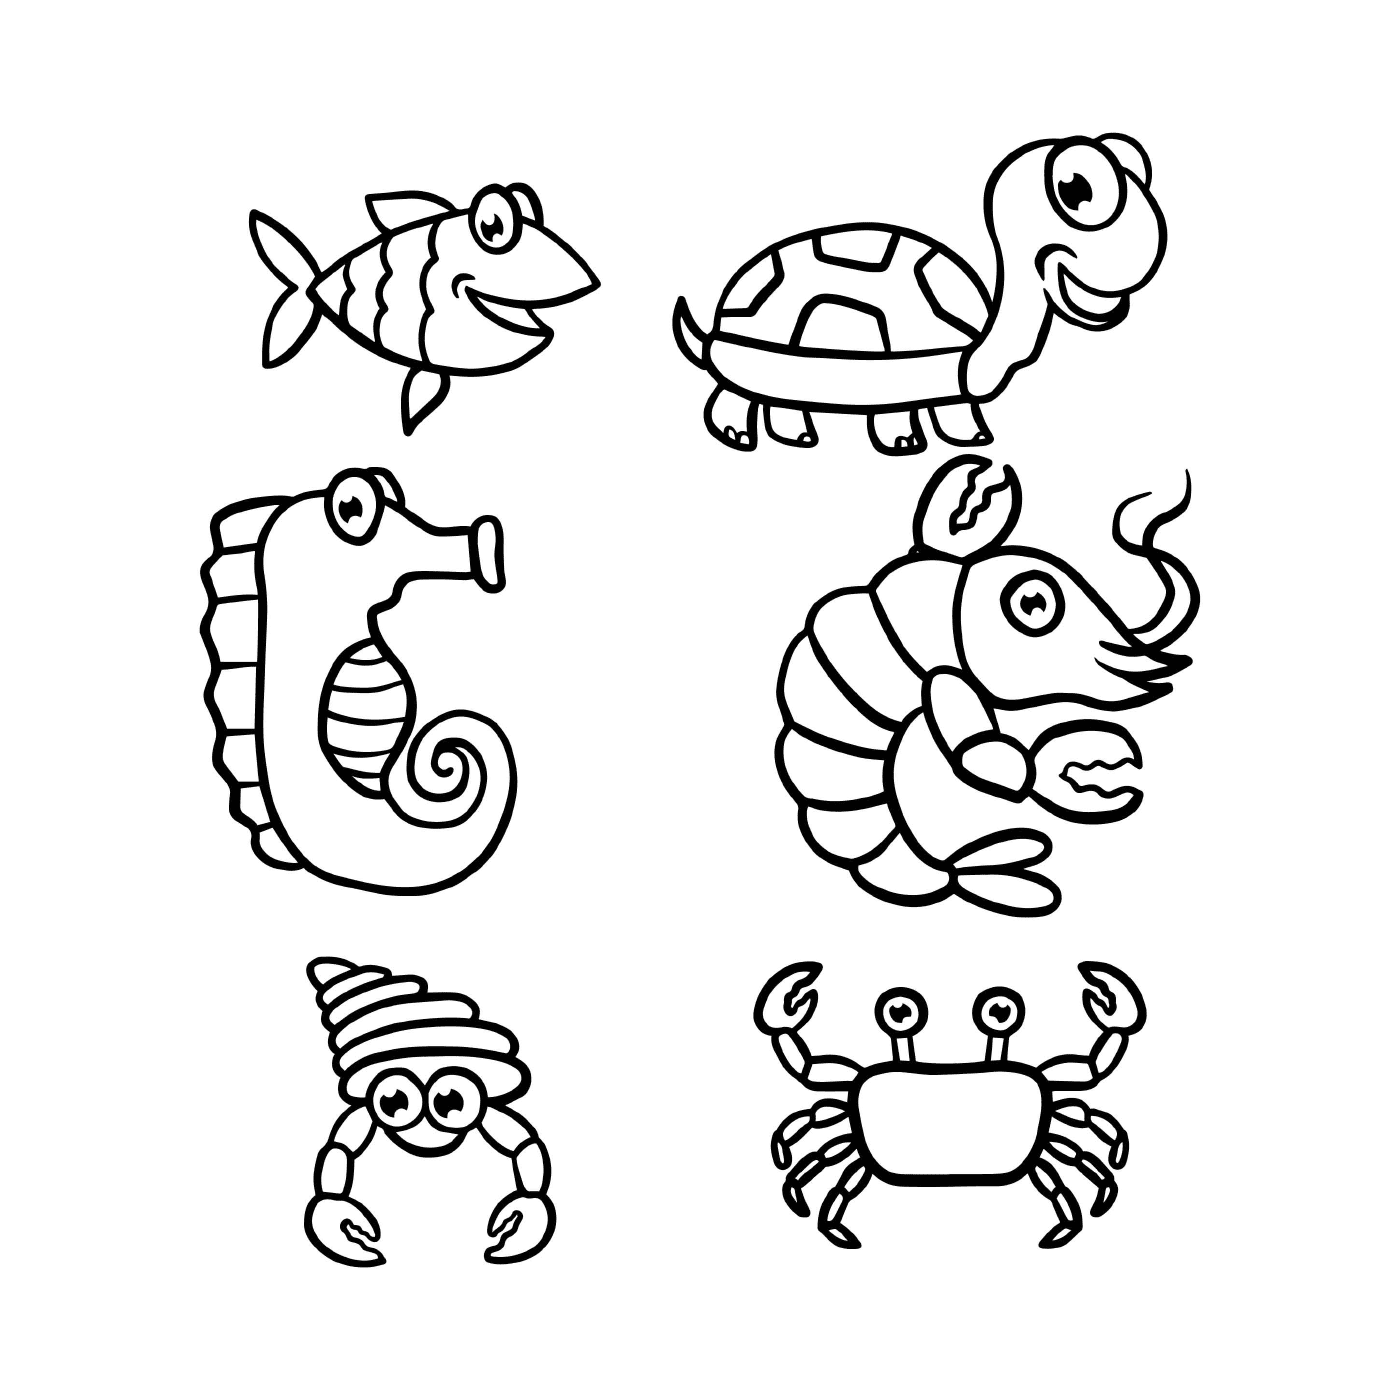  مجموعة من الحيوانات البحرية والمائية 